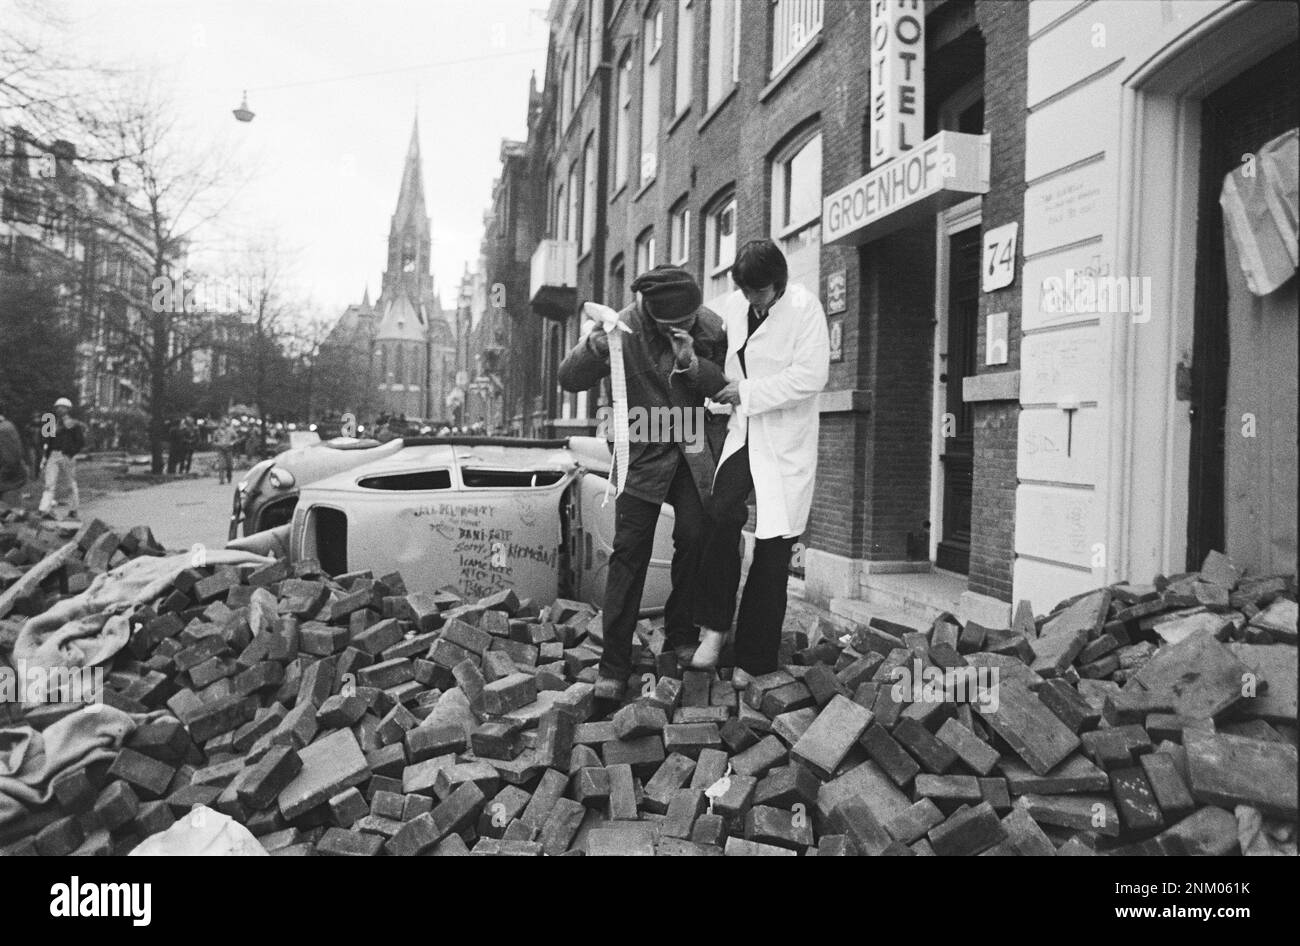 Niederländische Geschichte: Polizei und Armee mit gepanzerten Fahrzeugen und Panzern räumen Barrikaden in Vondelbuurt, Amsterdam; eine verletzte Person wird weggebracht (besetzte Aufstände) ca. 3. März 1980 Stockfoto